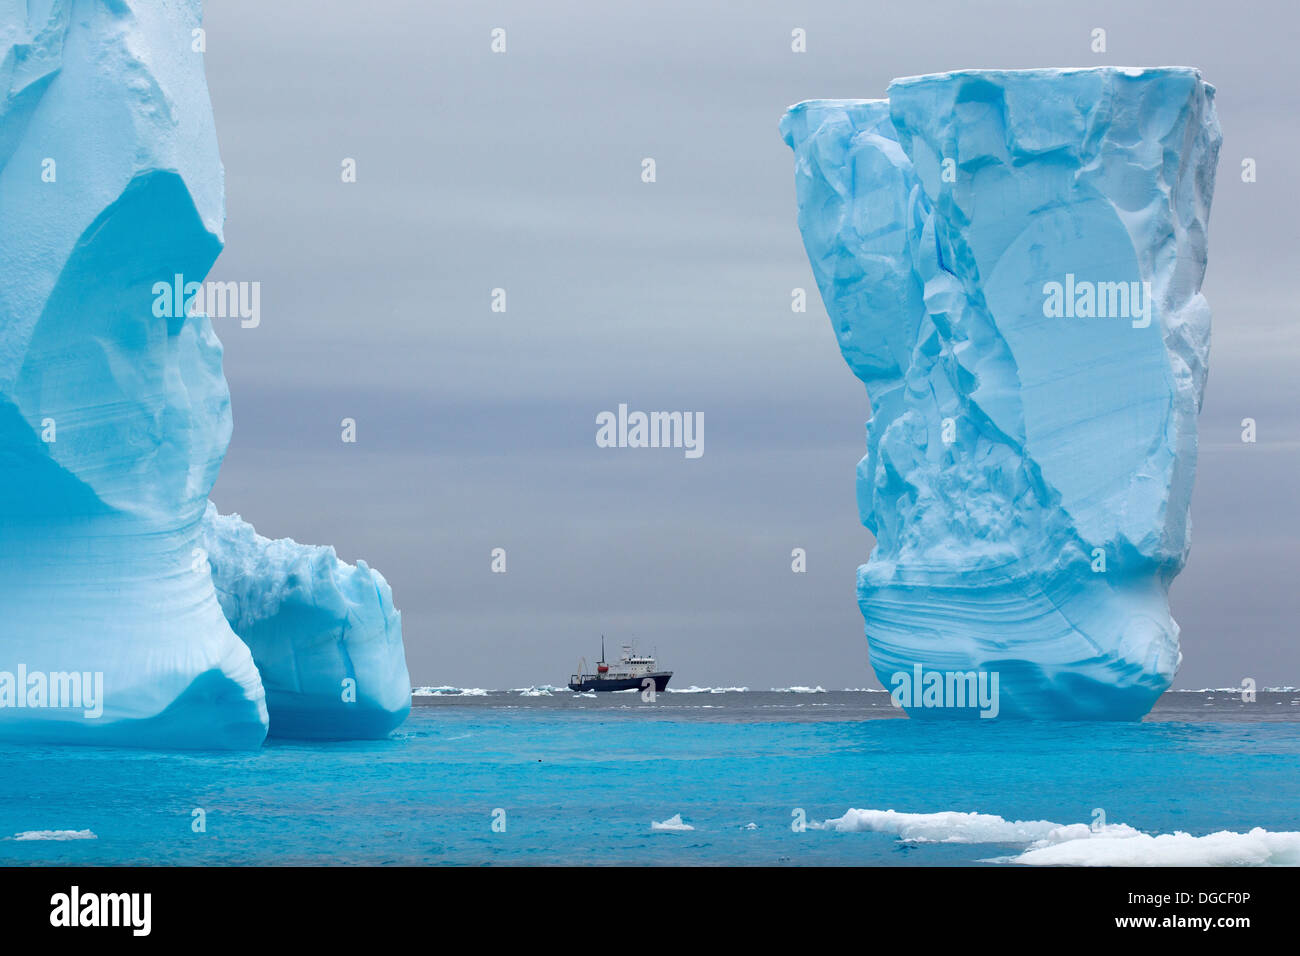 Navire de recherche aventure Spirit of Enderby entre ice bergs dans la banquise dans l'océan austral Banque D'Images